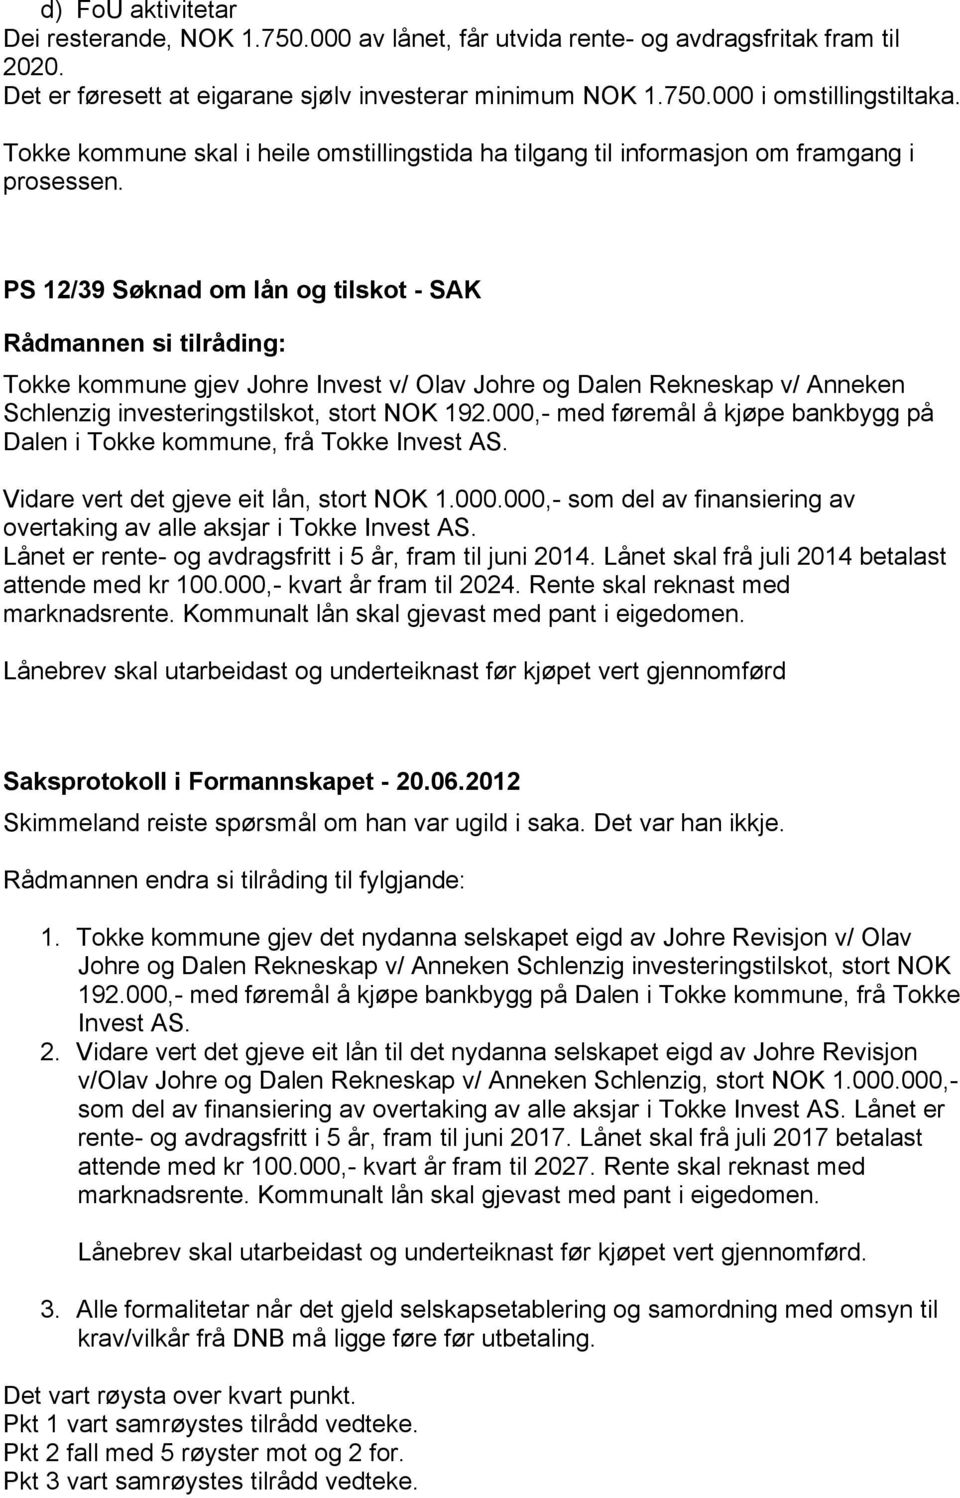 PS 12/39 Søknad om lån og tilskot - SAK Tokke kommune gjev Johre Invest v/ Olav Johre og Dalen Rekneskap v/ Anneken Schlenzig investeringstilskot, stort NOK 192.